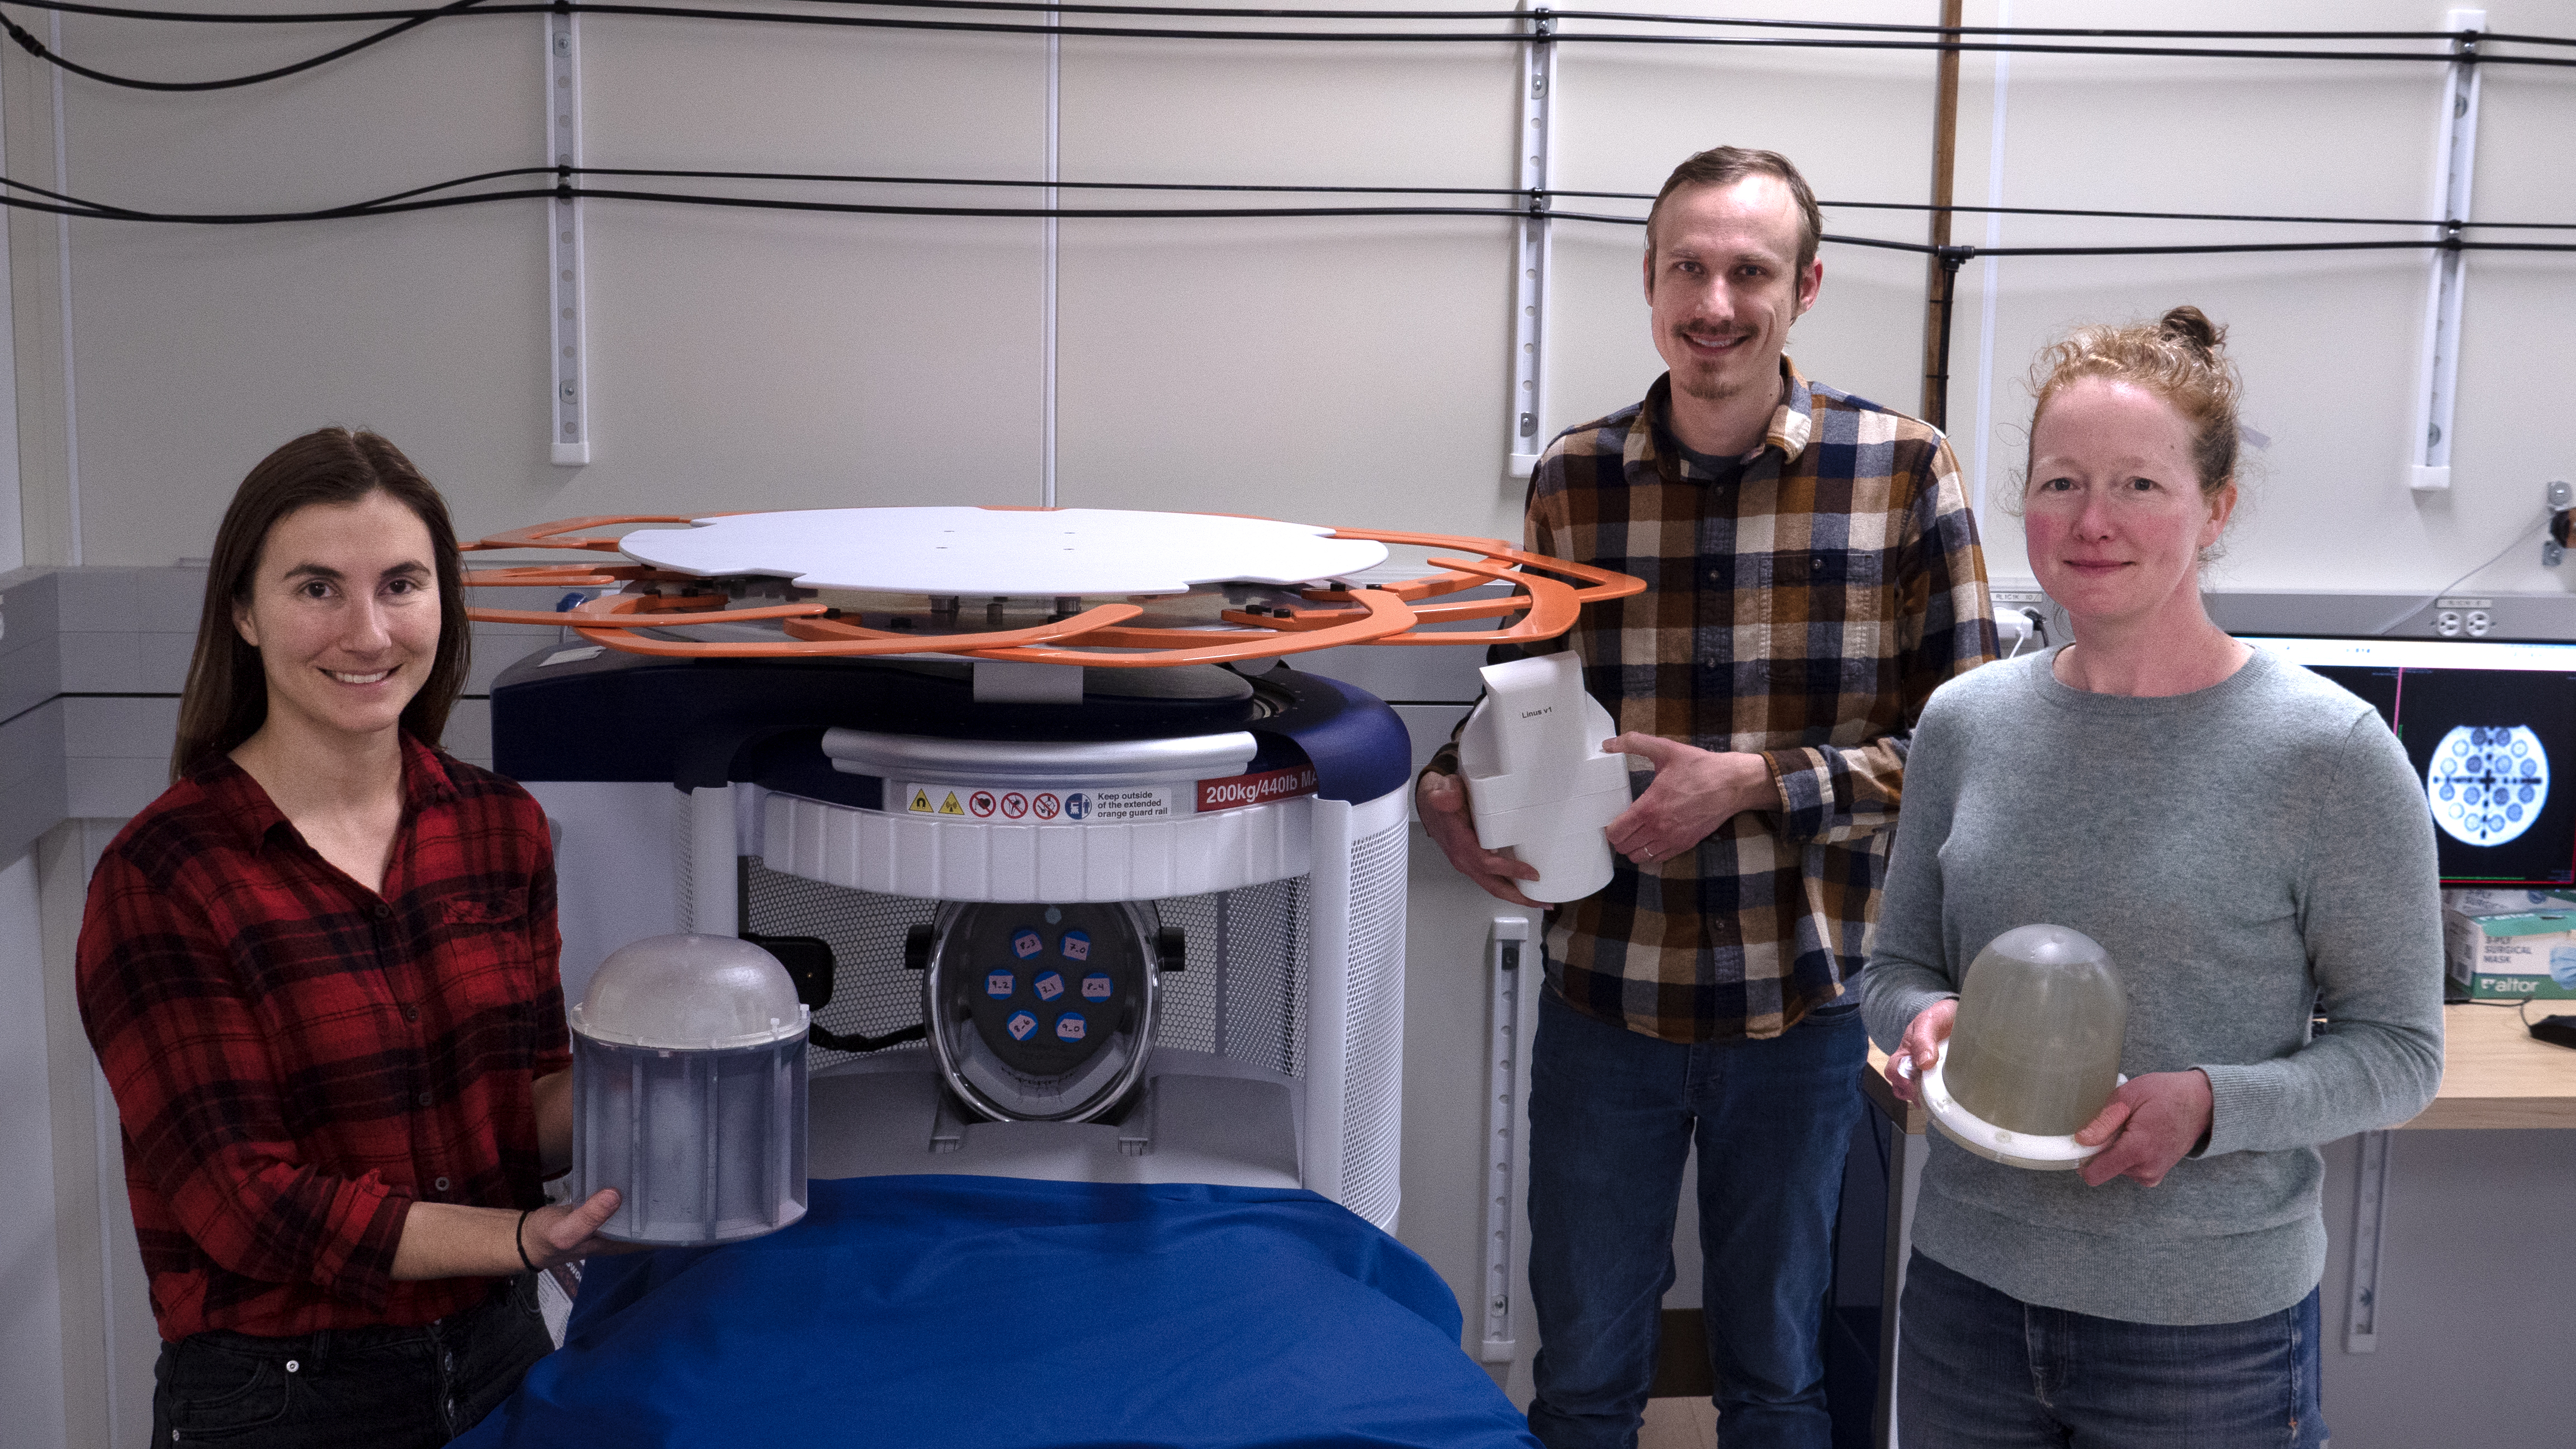 Tre ricercatori sorridenti e vestiti in modo casual stanno intorno a una macchina per la risonanza magnetica, ognuno con in mano un dispositivo diverso utilizzato nei loro esperimenti.